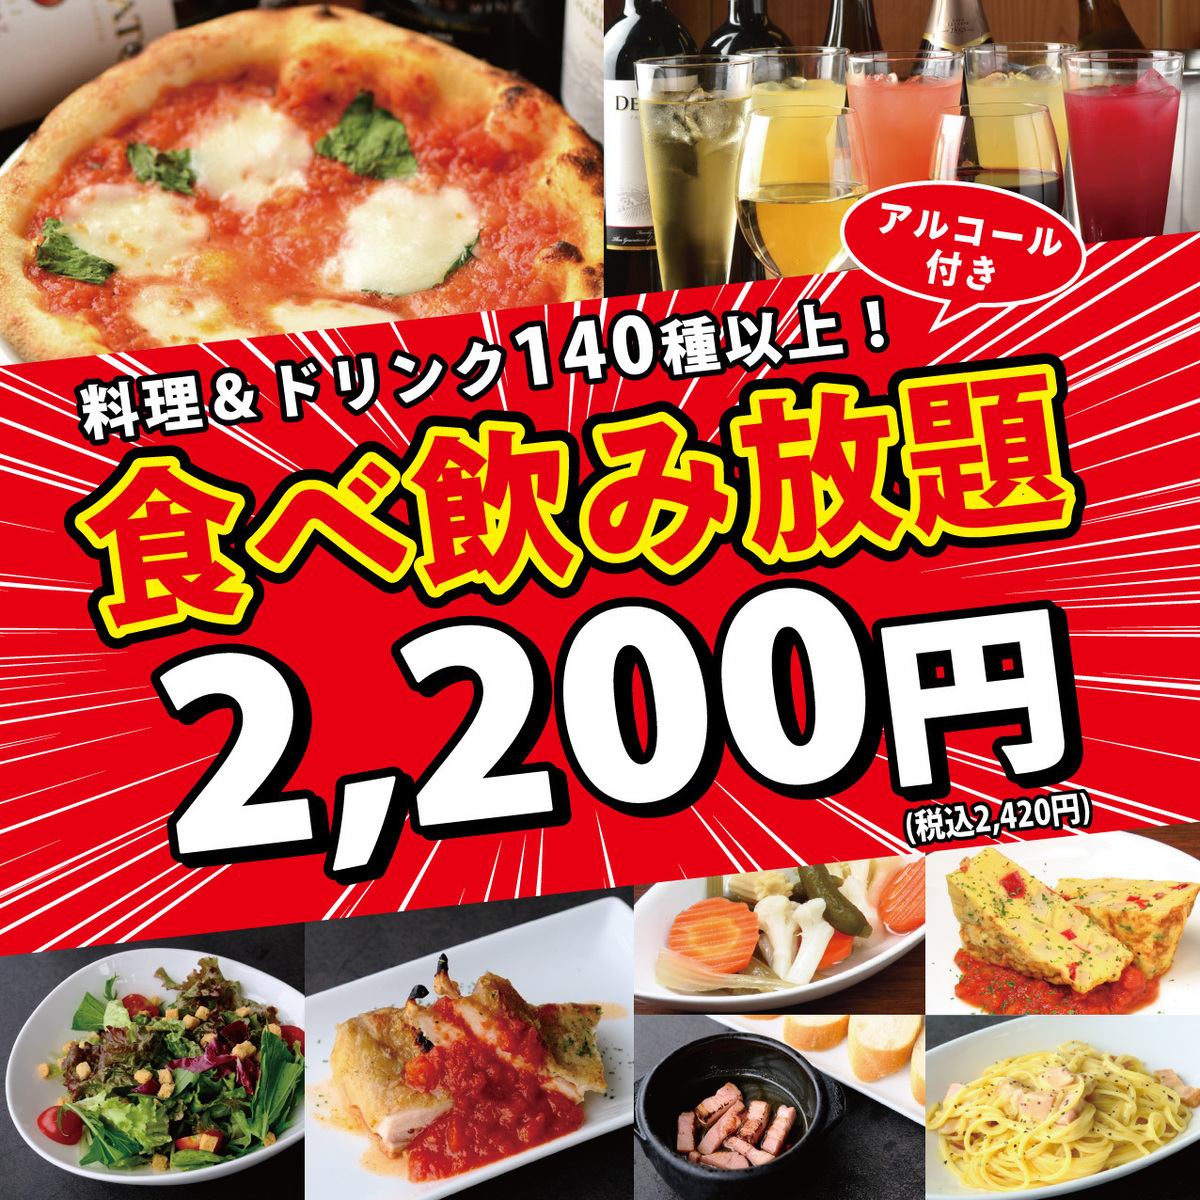 从荣站1号出口步行30秒！吃喝无限2,420日元♪